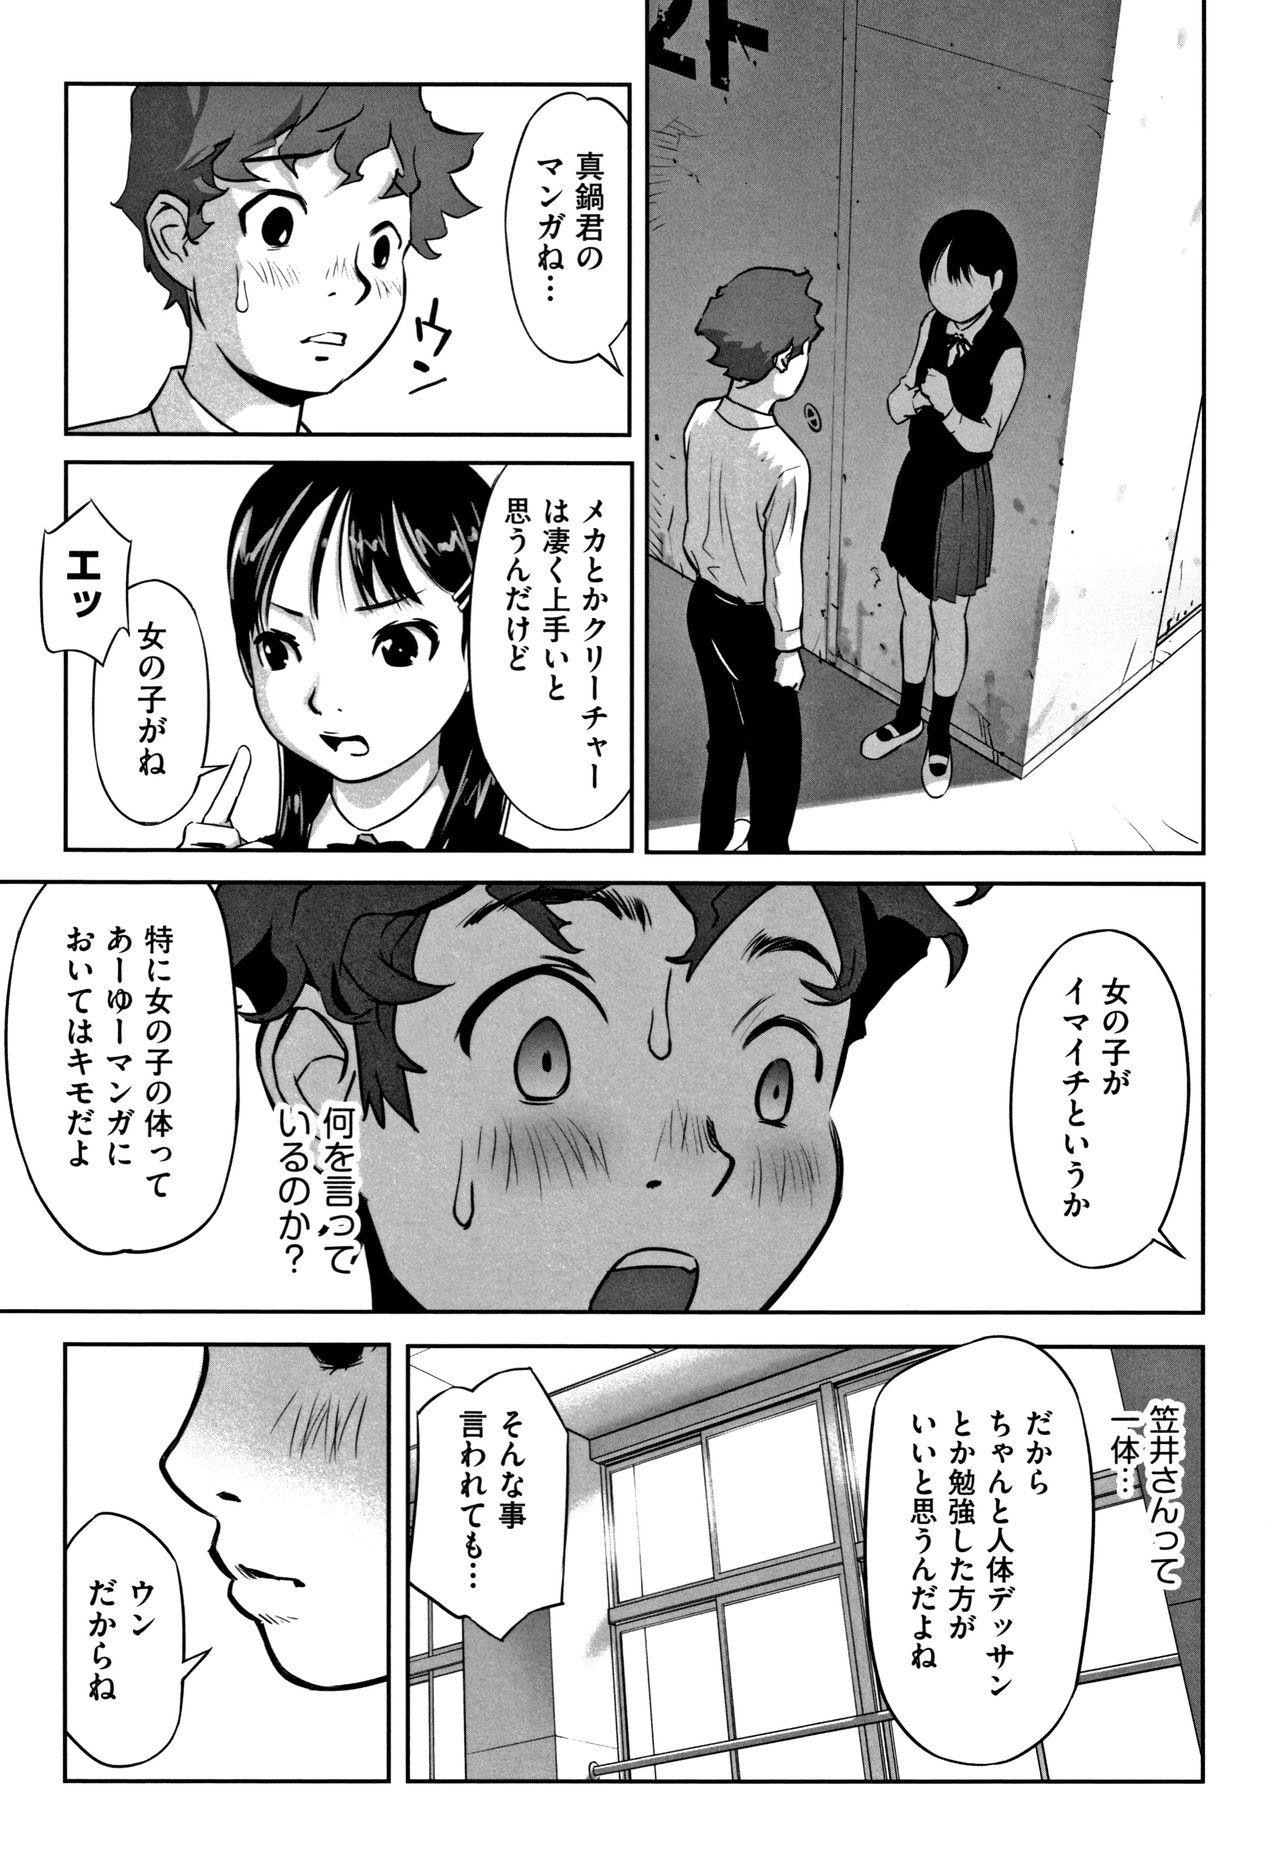 Satin Otokonoko wa Soko no Kouzou ga Shiritai noda Nylons - Page 12